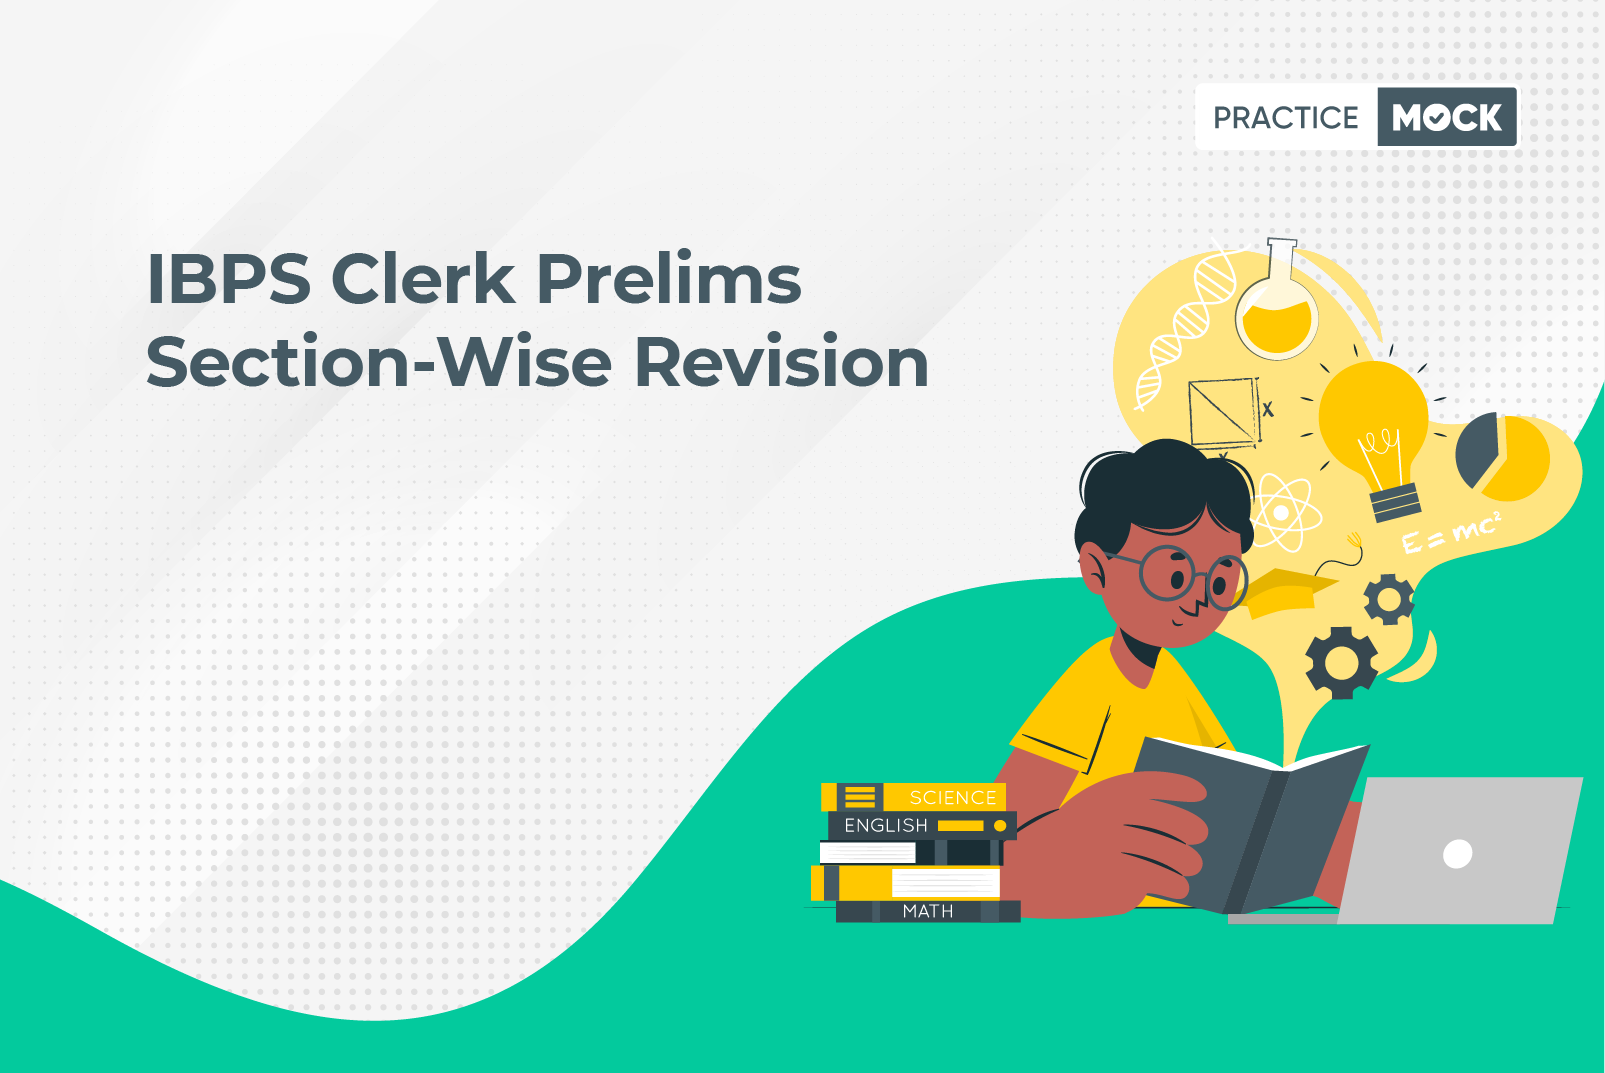 IBPS Clerk Revision